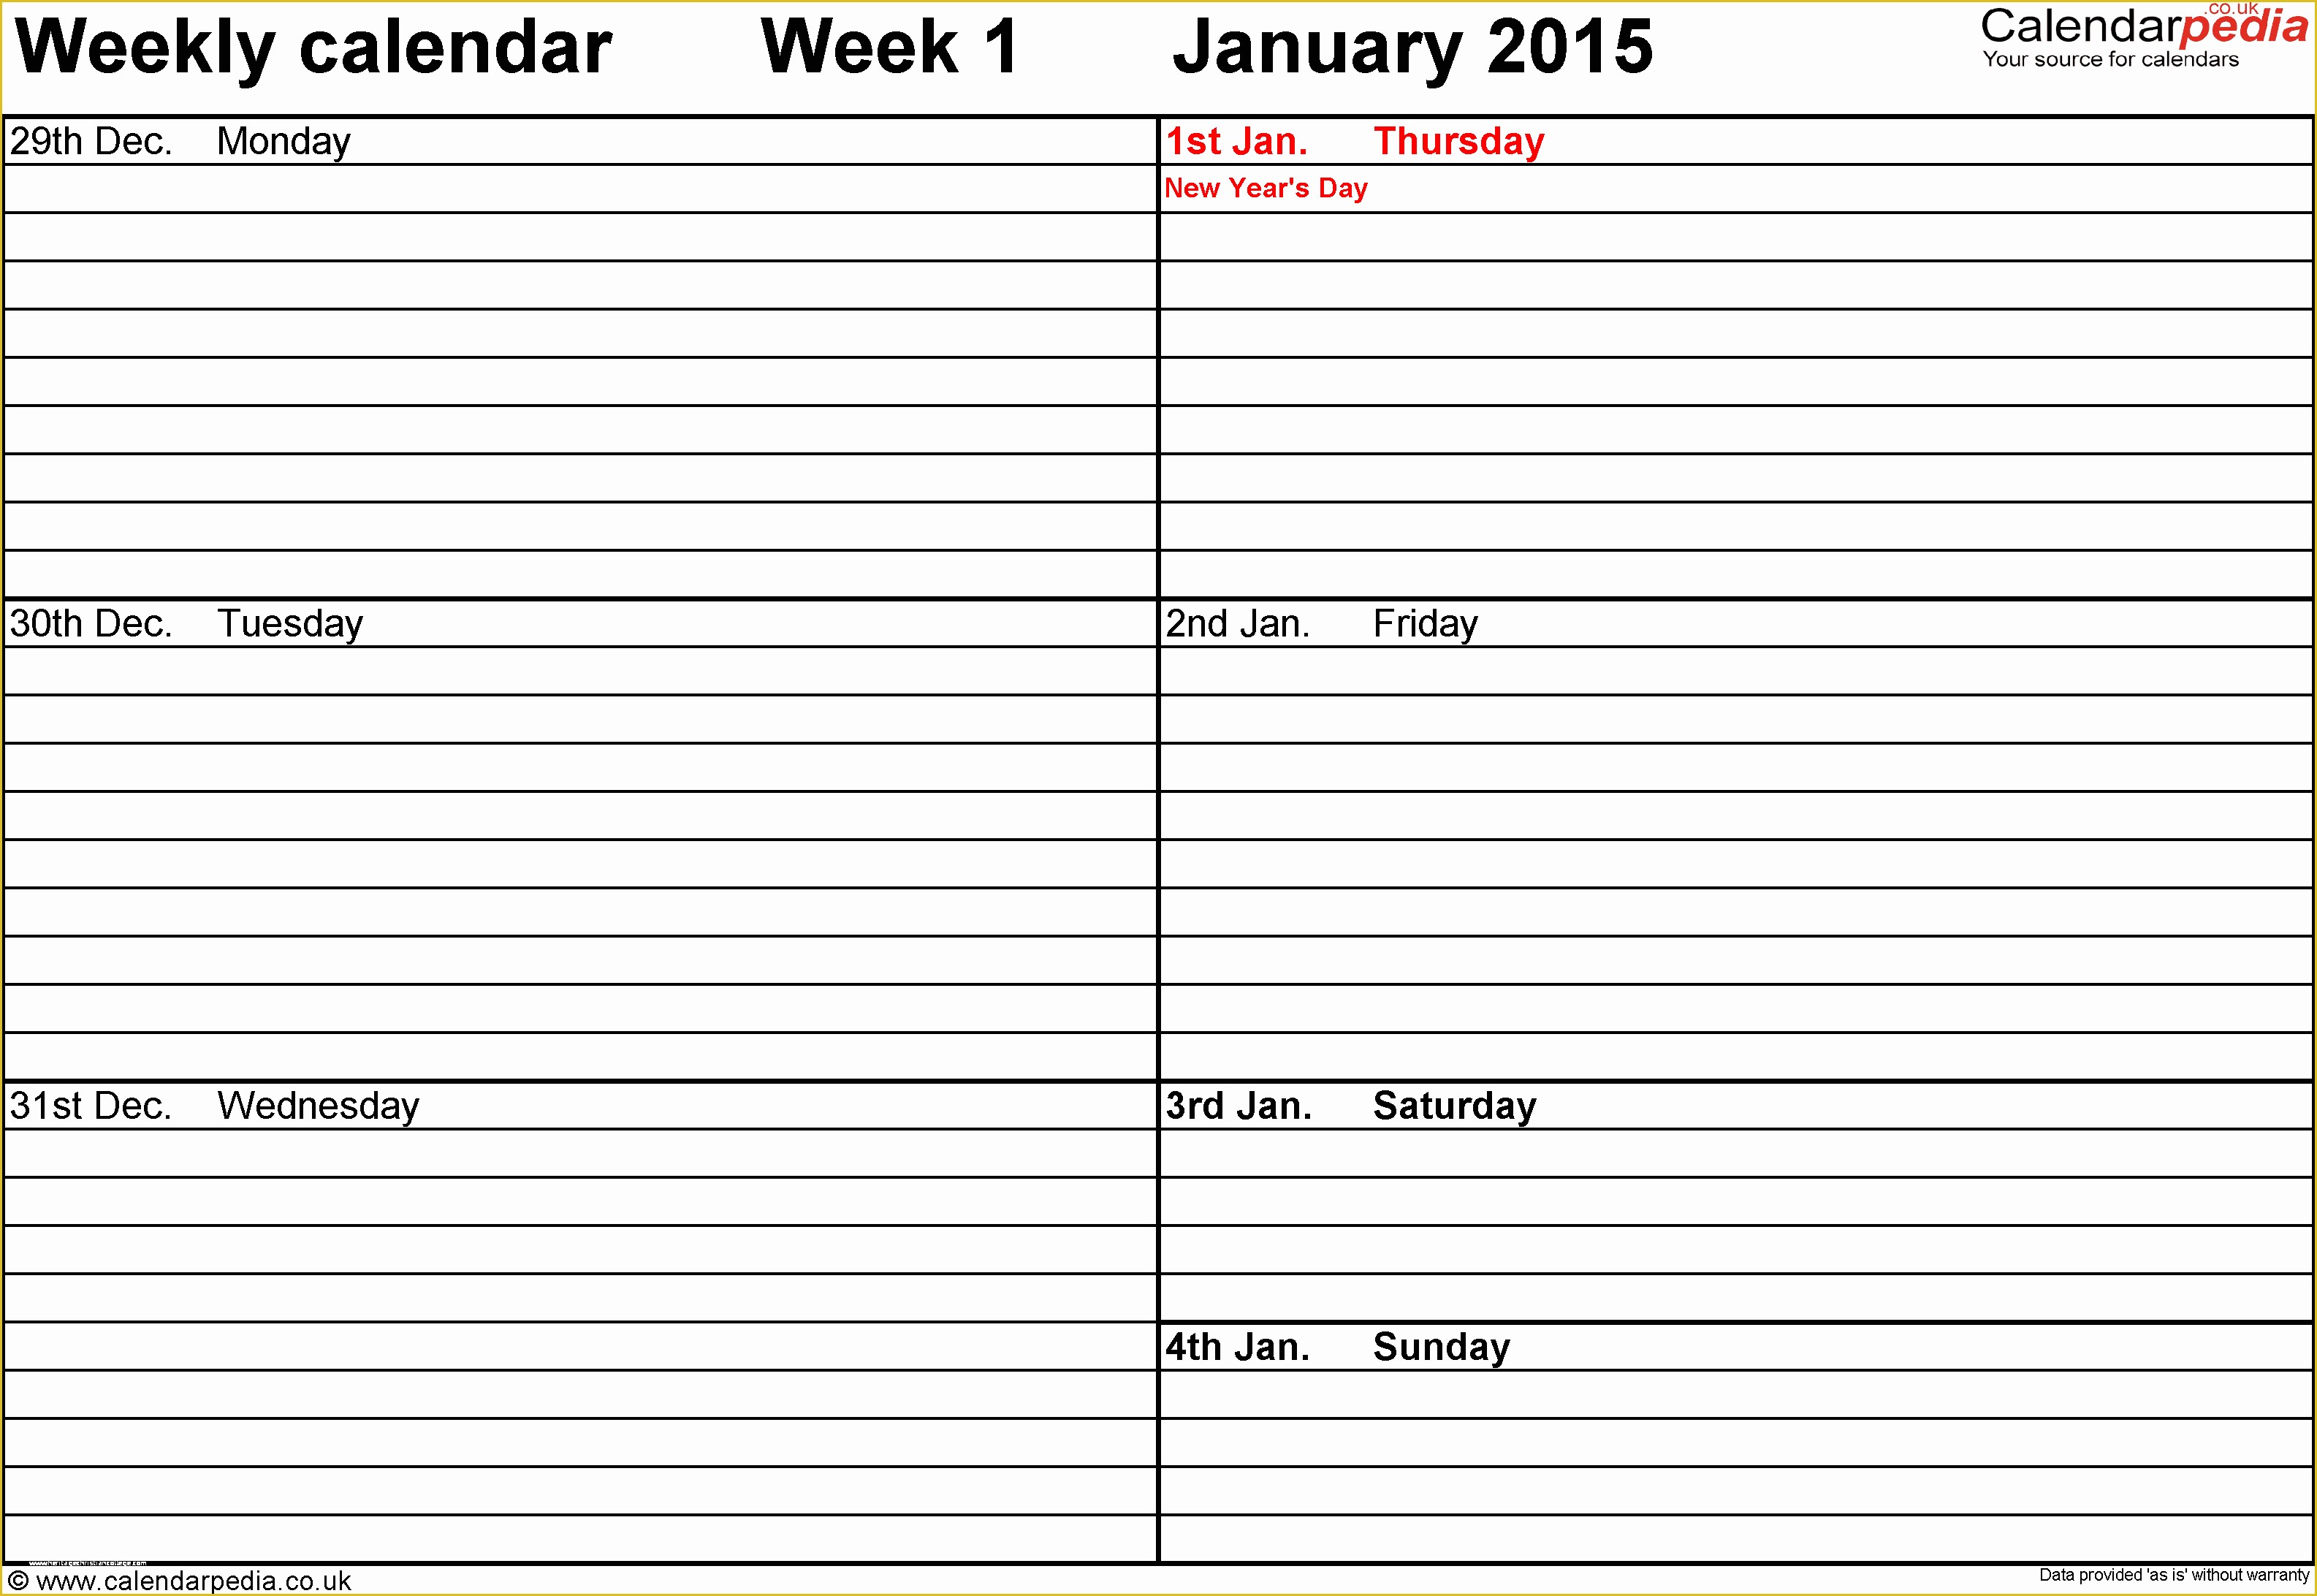 Free Weekly Calendar Template Of Weekly Calendar Pdf